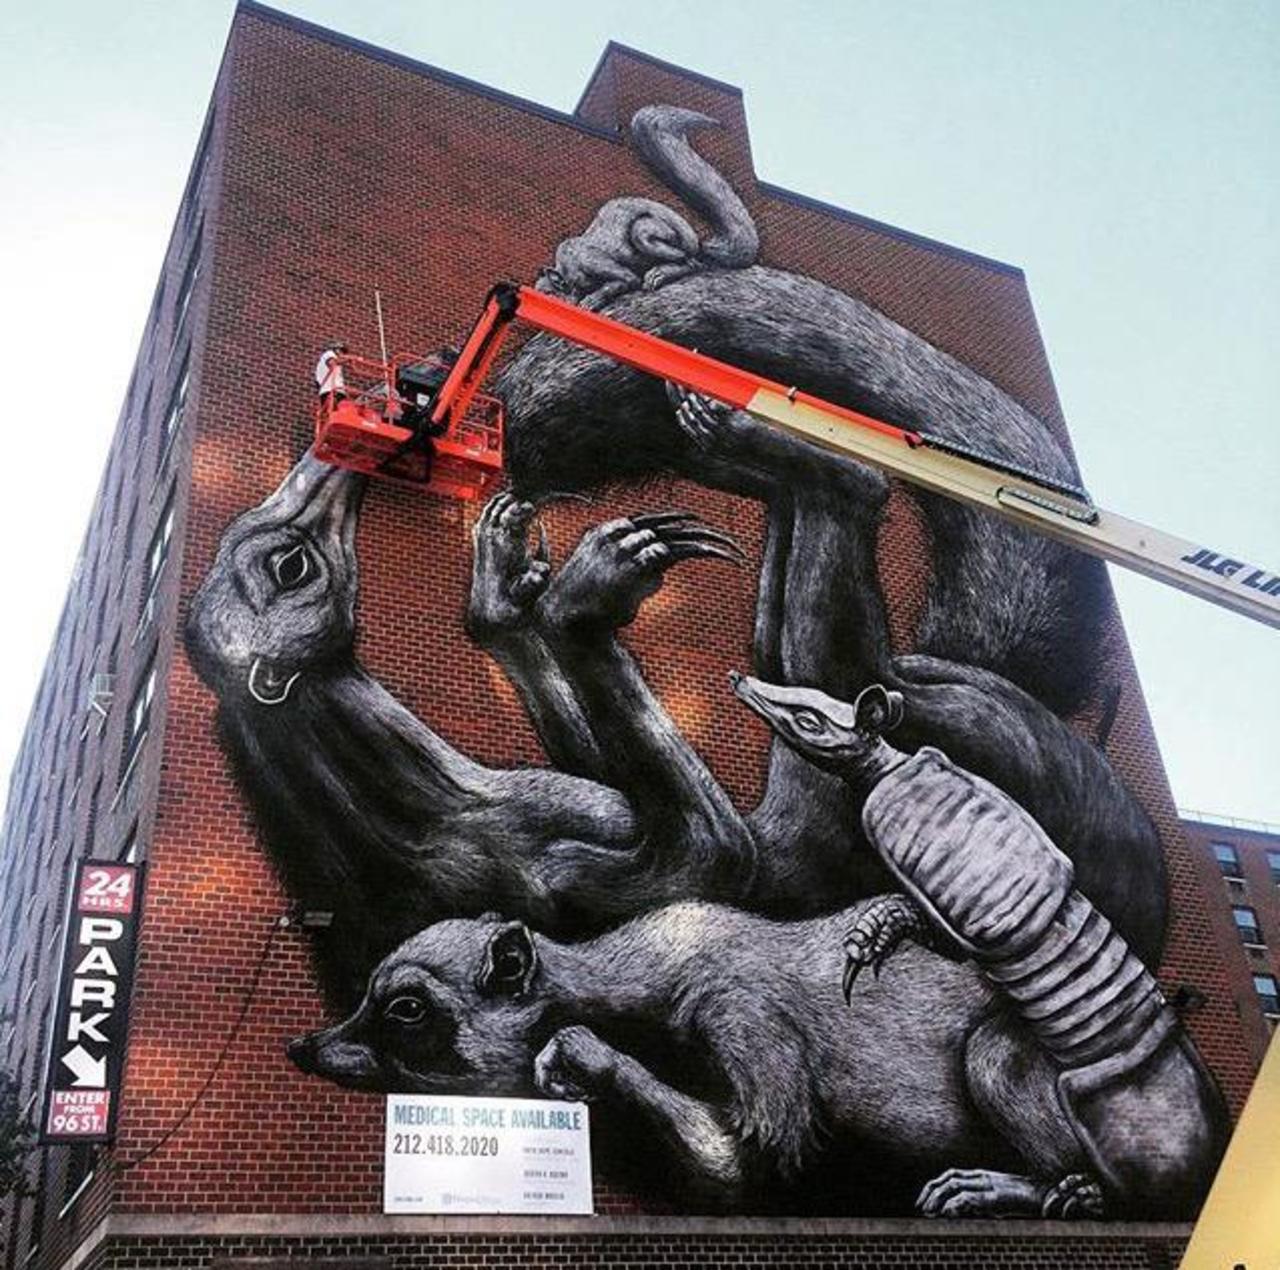 Street Art in progress by ROA in NYC

#art #graffiti #mural #streetart http://t.co/698nBcsE9A